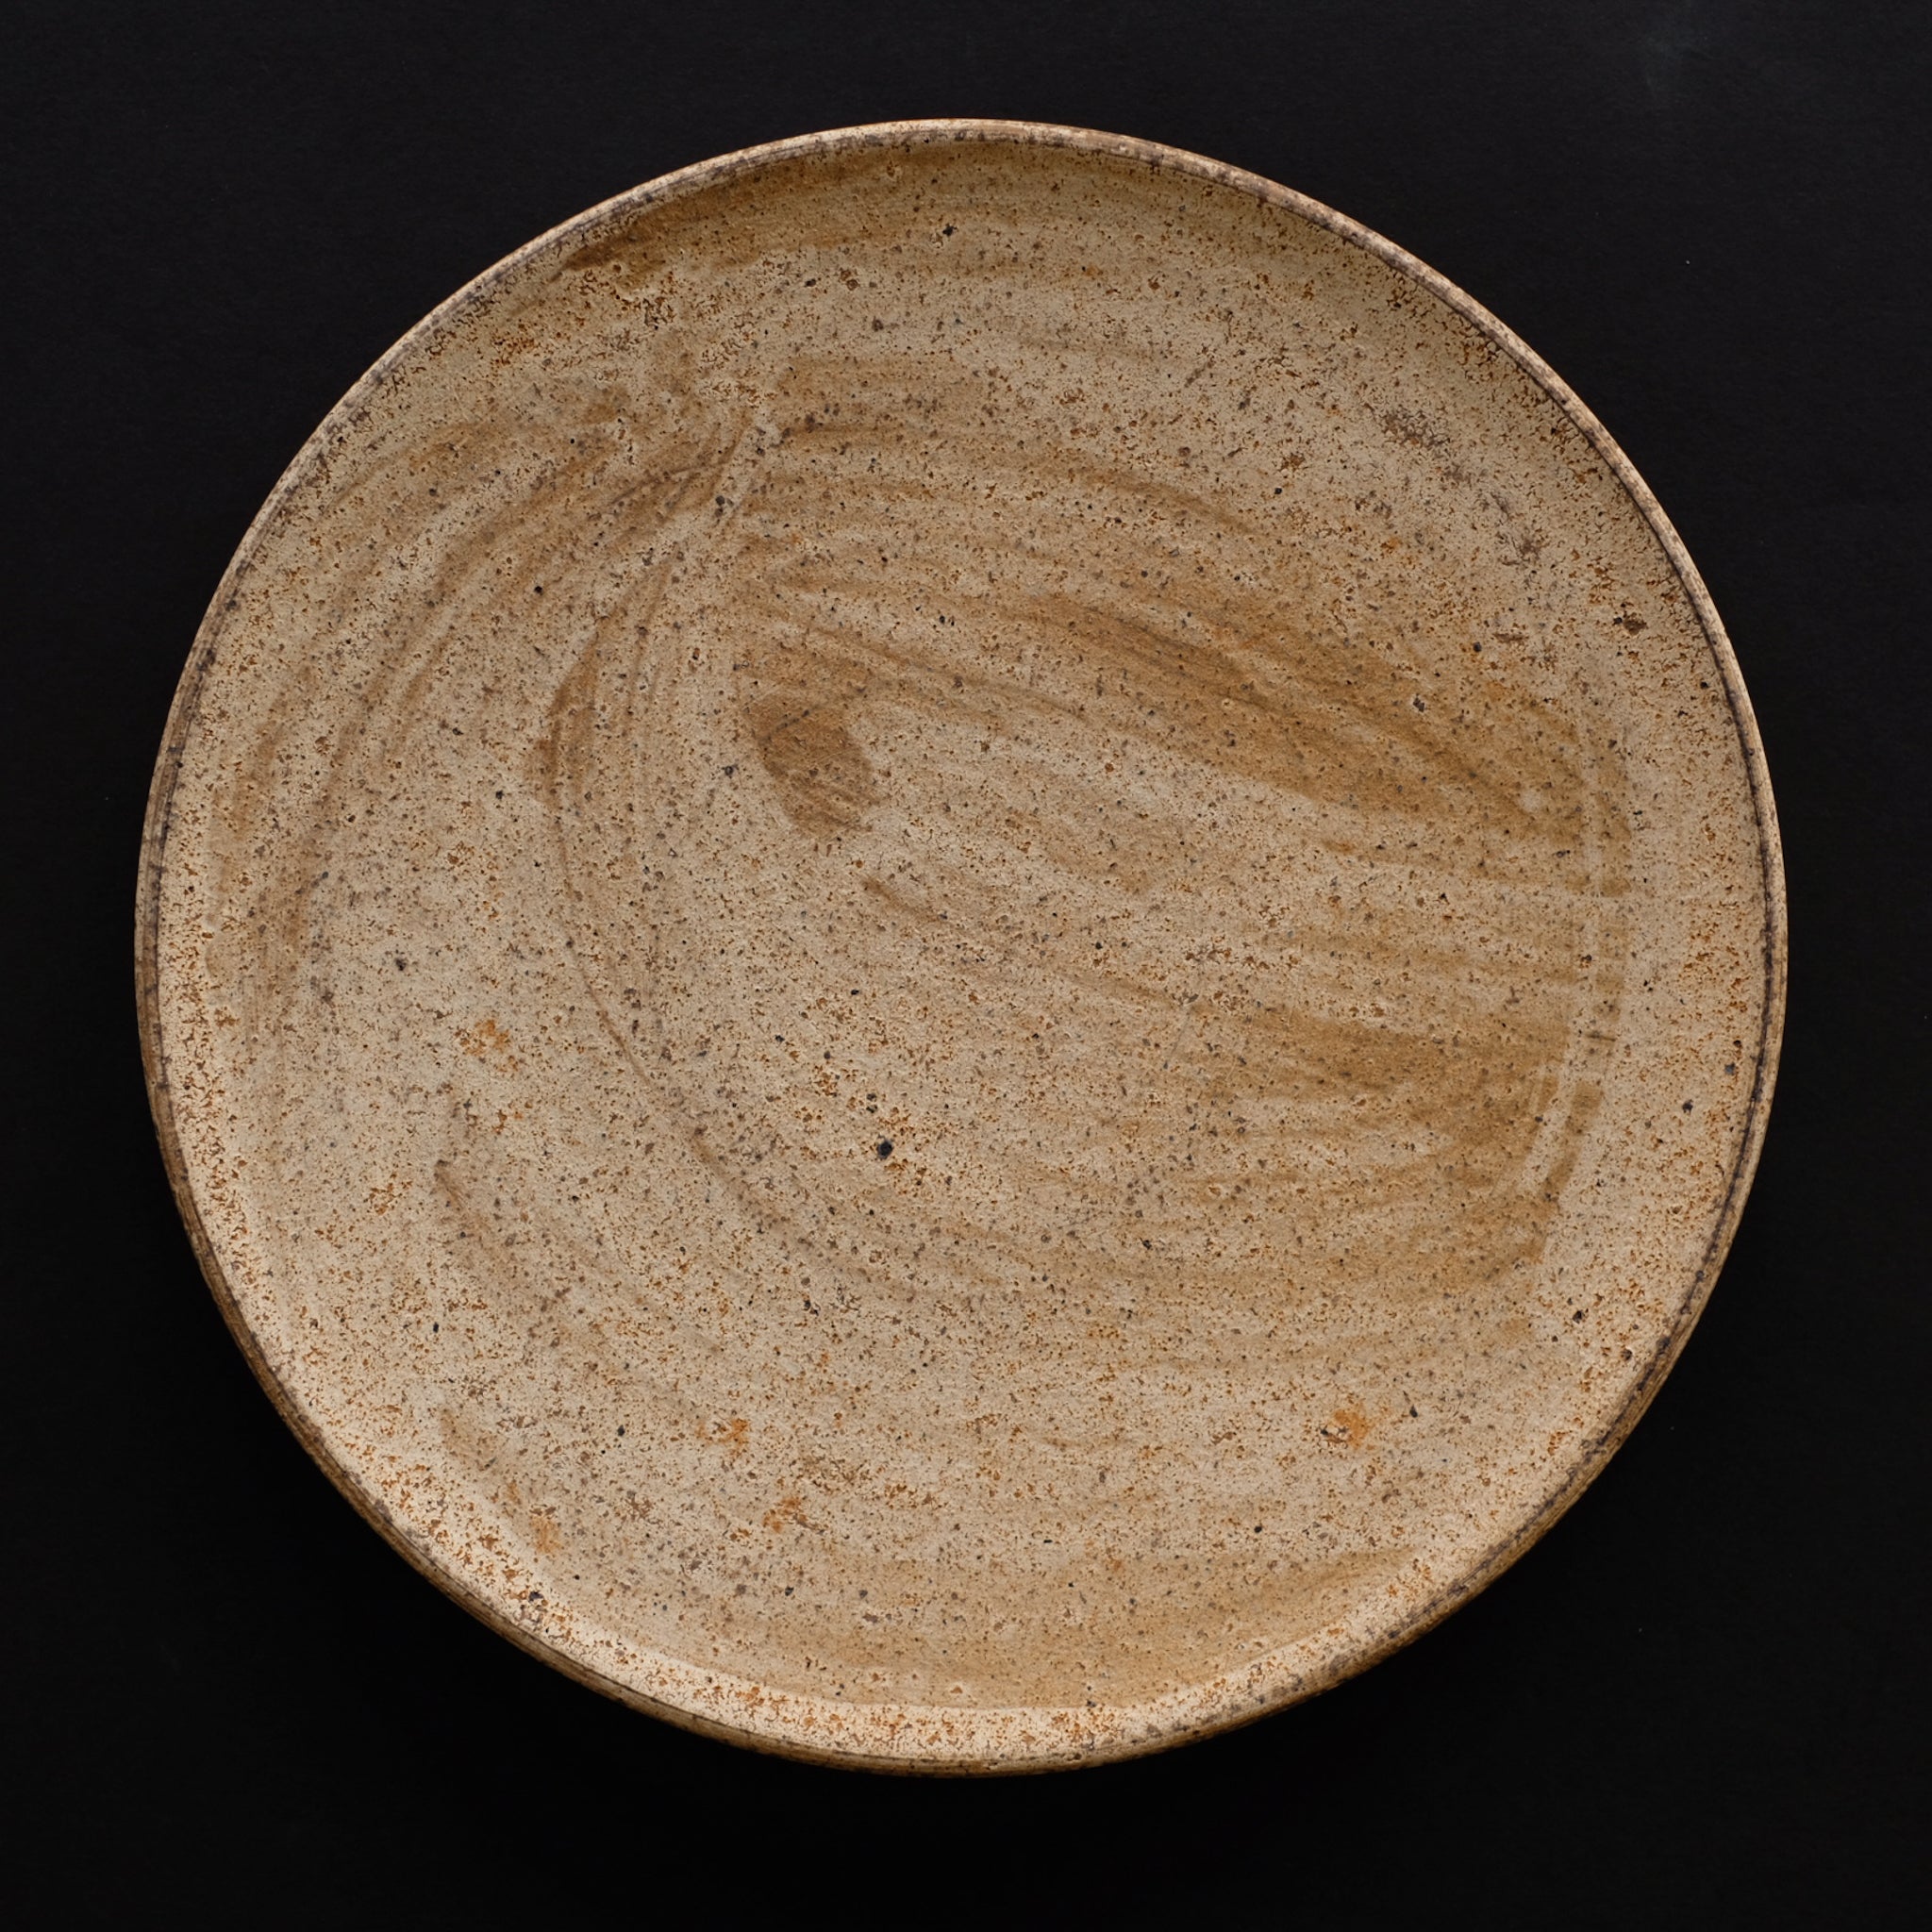 二階堂明弘 やきしめ丸皿 (φ22.8cm) Akihiro Nikaido Yakishime plate 